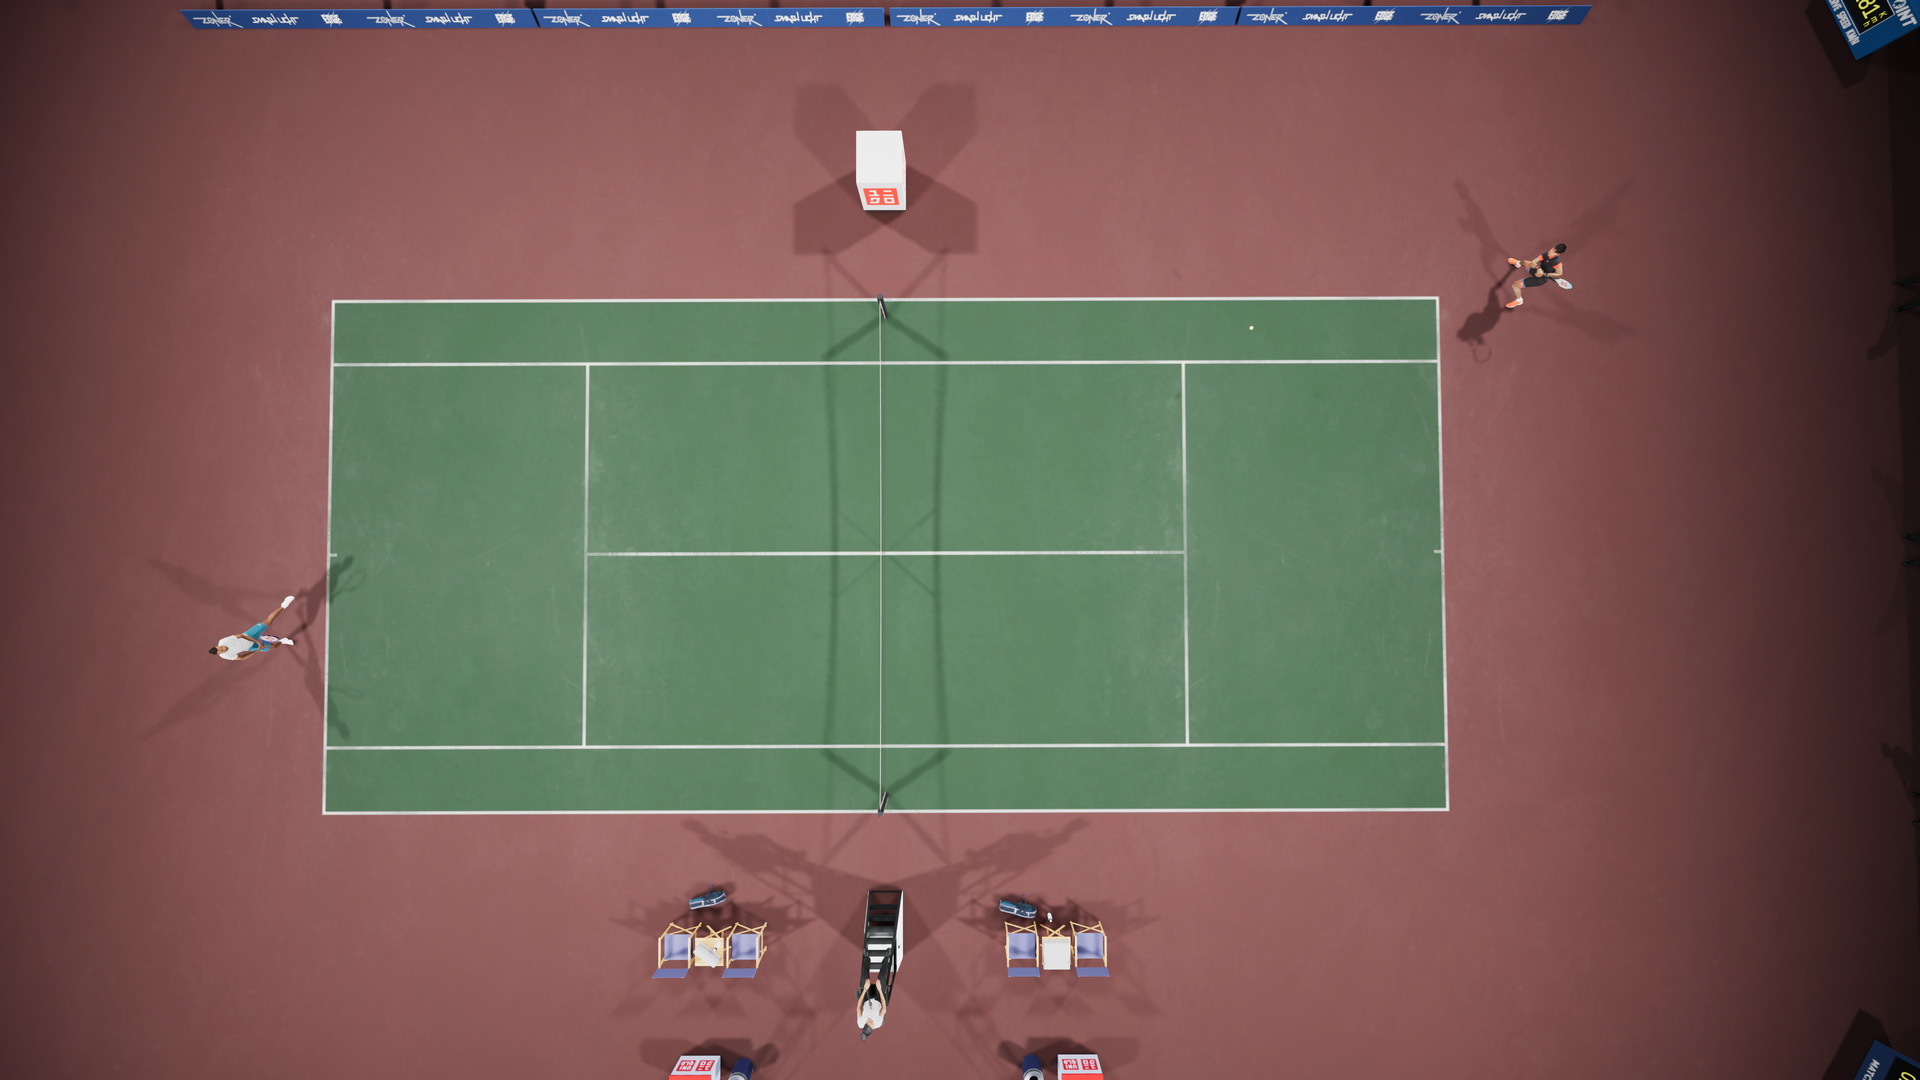 Matchpoint - Tennis Championships - screenshot 7